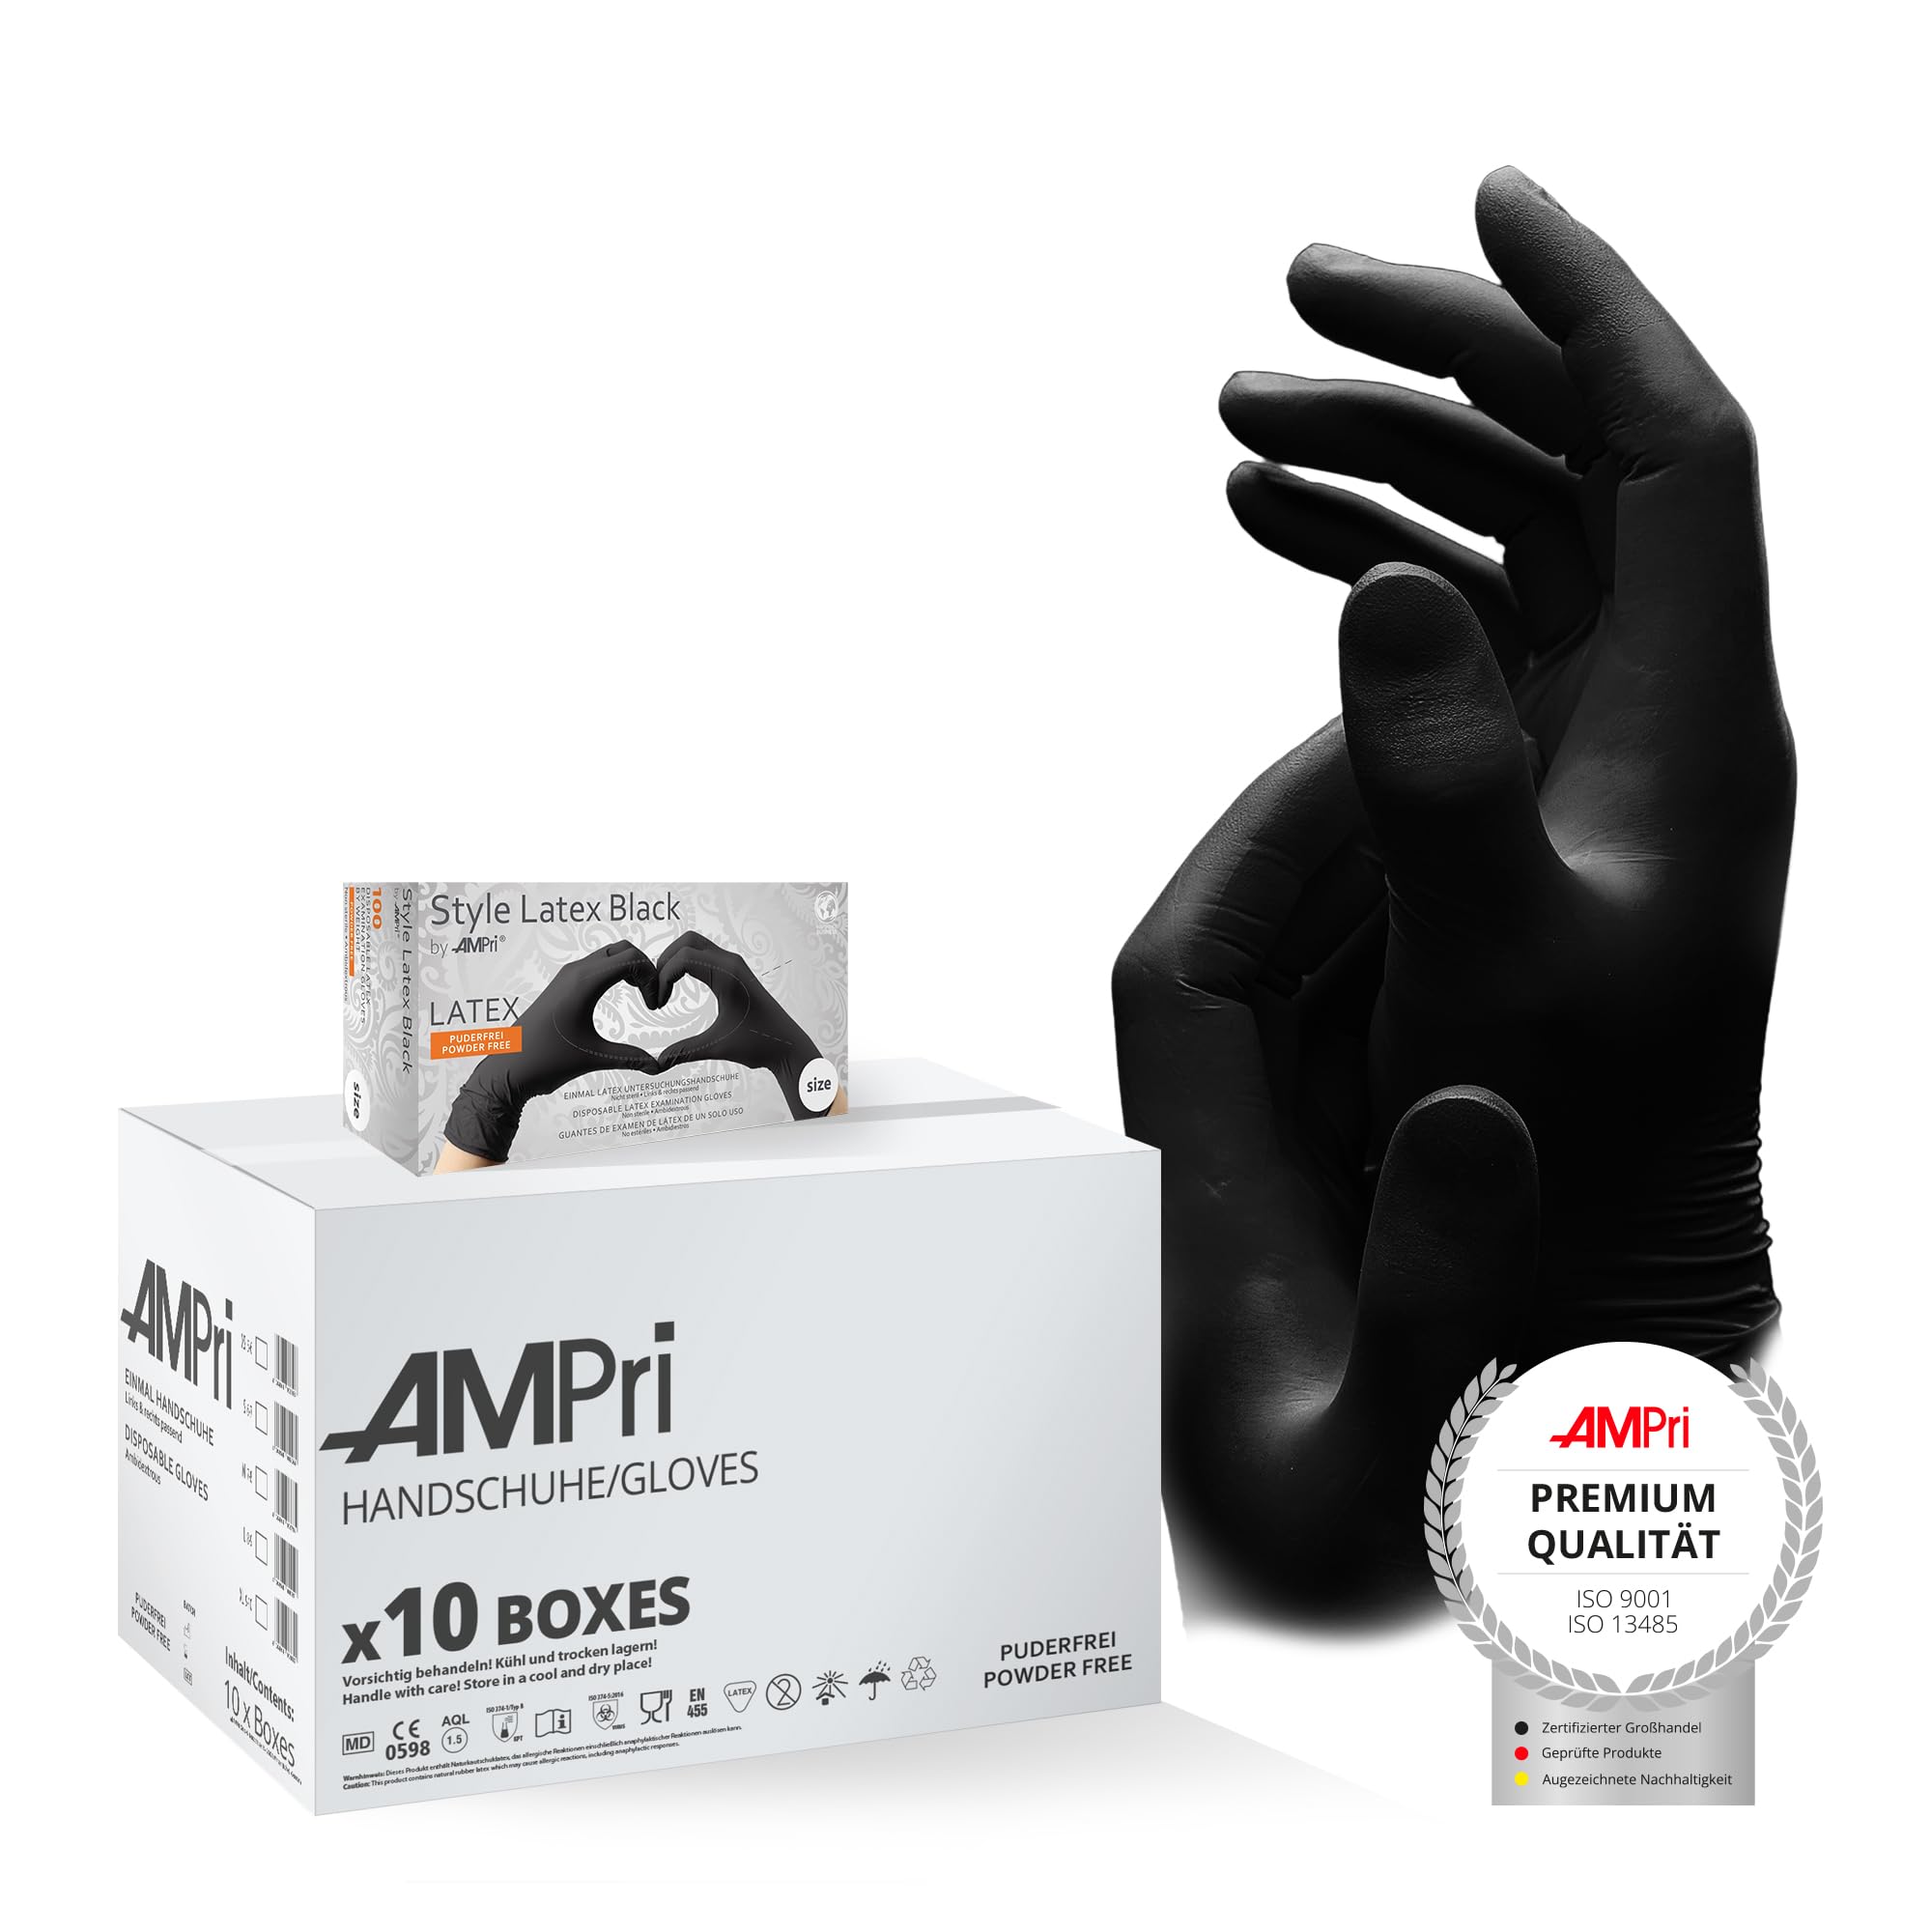 AMPri Latexhandschuhe, schwarz, 10 Box a 100 Stk, Größe XL, puderfrei, Style Latex Black: Latex Einweghandschuhe in den Größen XS, S, M, L, XL